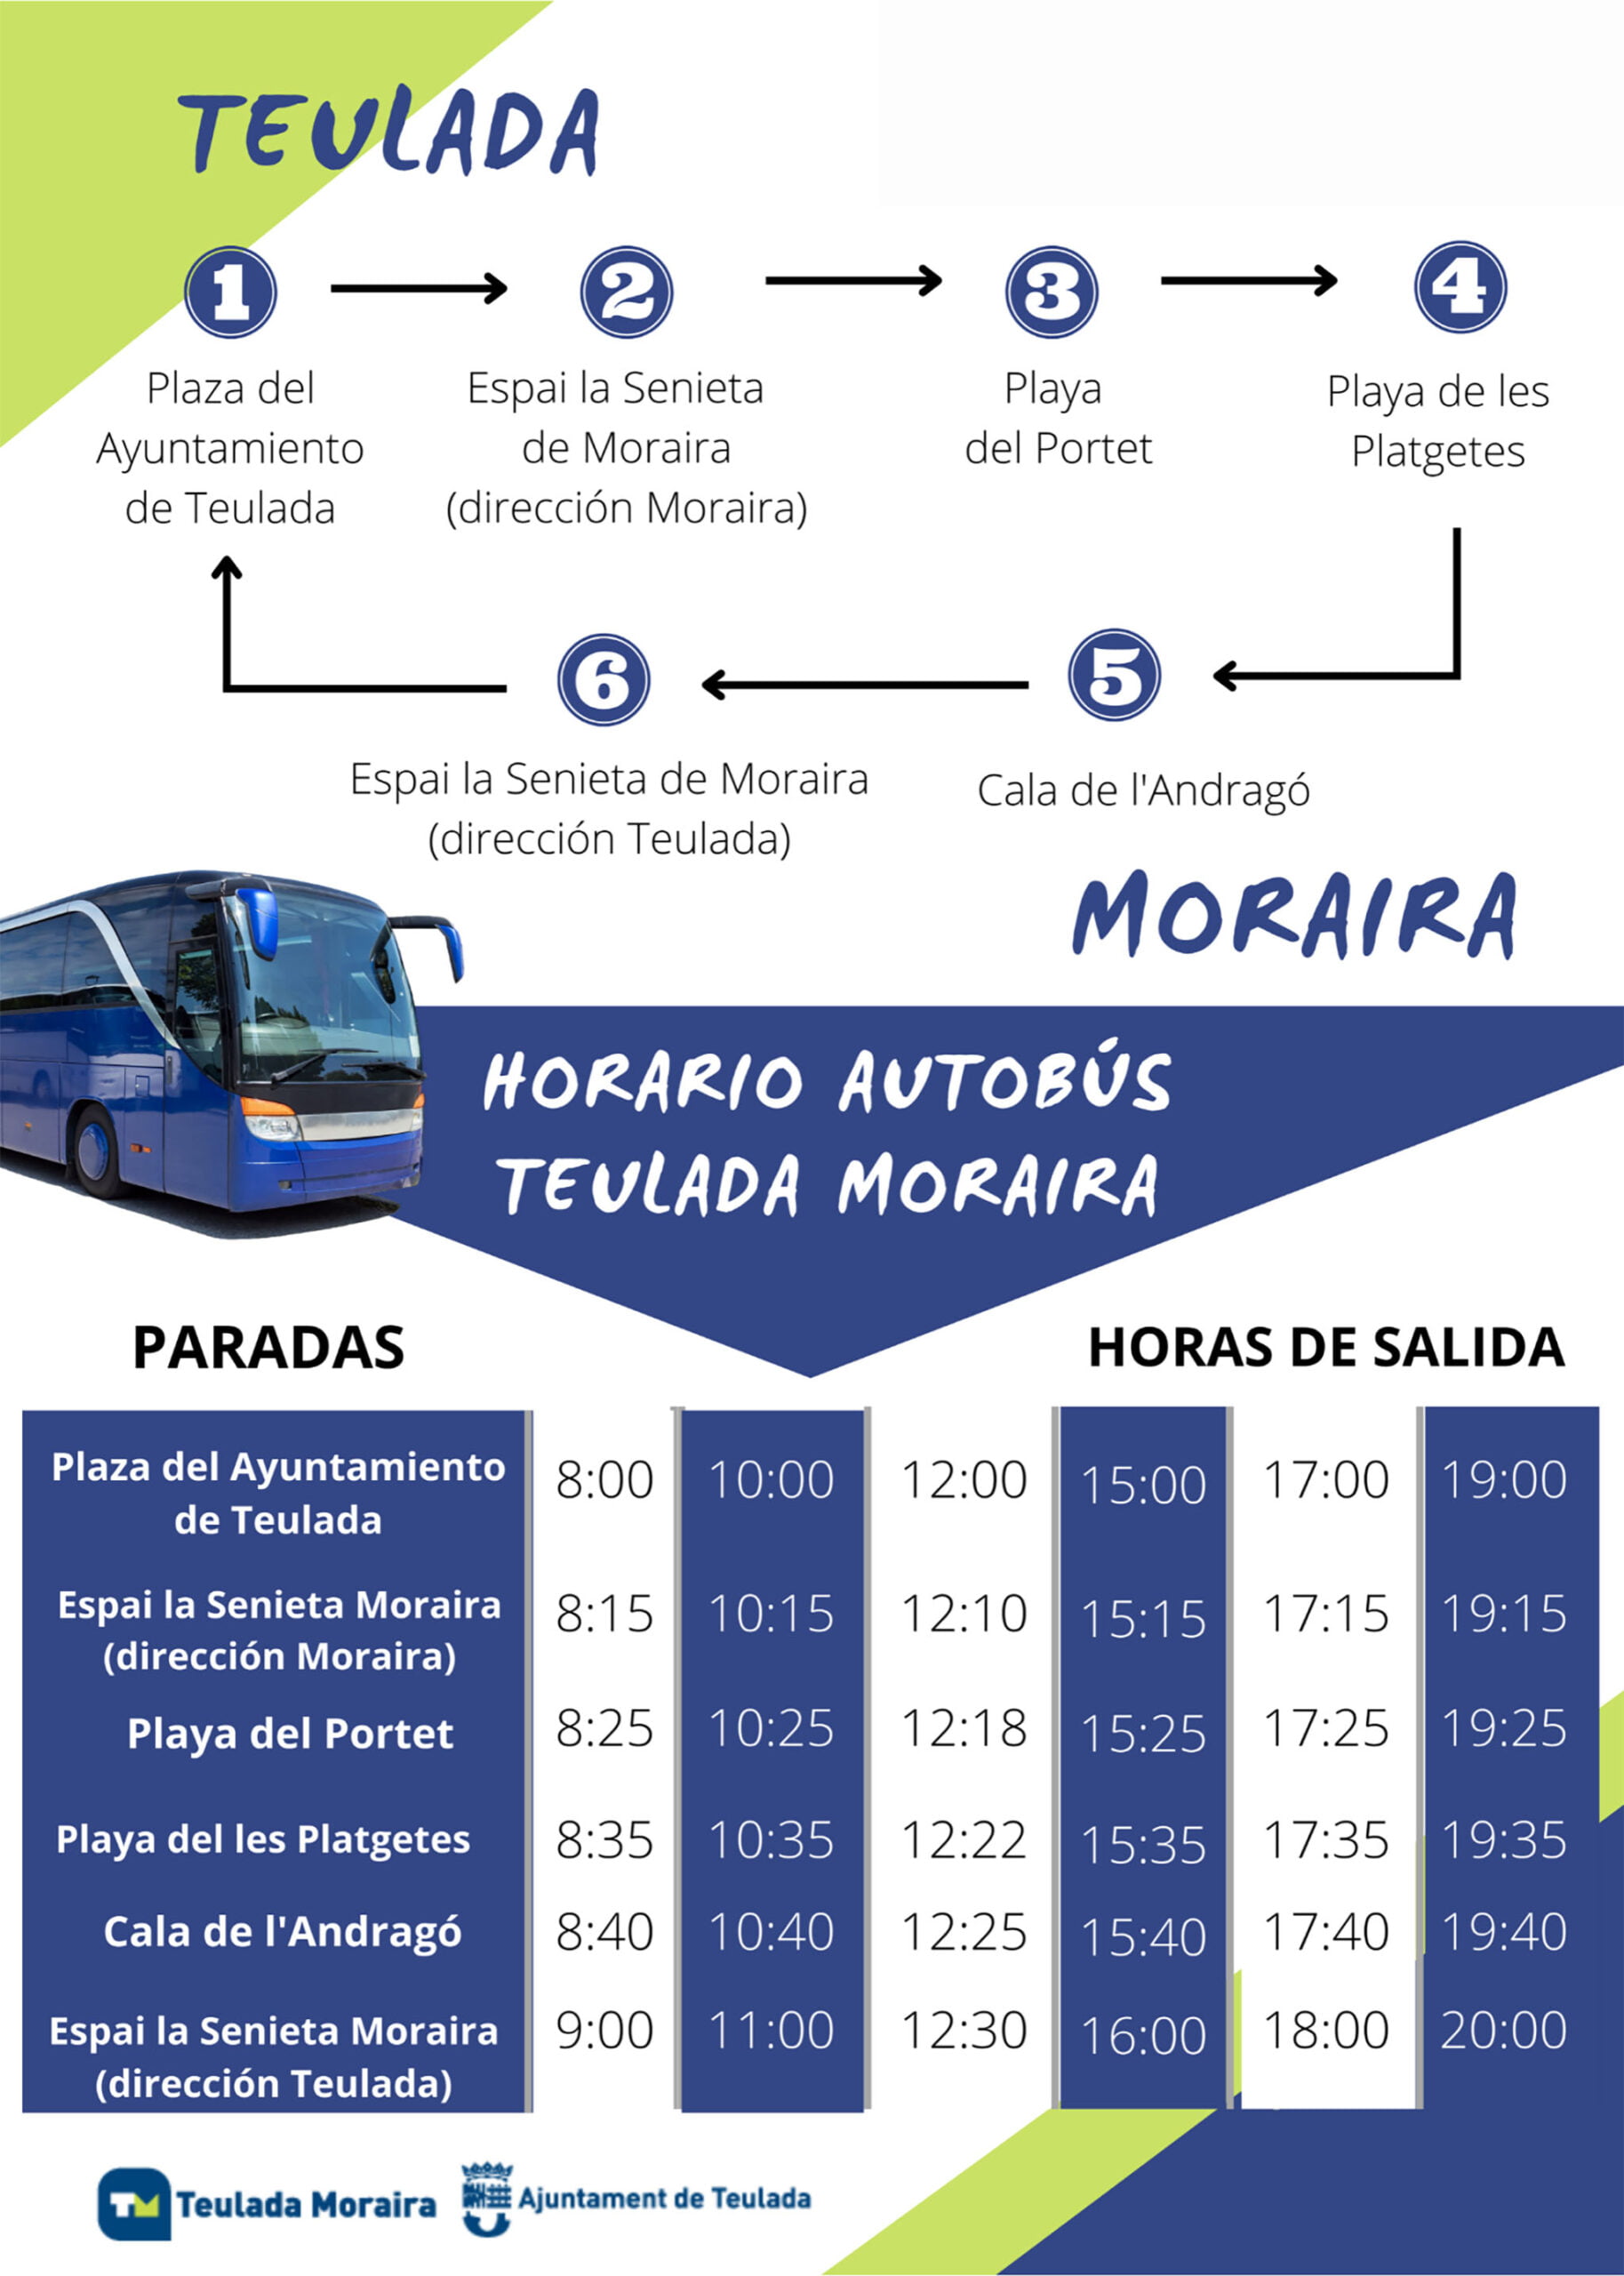 Horarios y paradas del autobús gratuito en Teulada Moraira